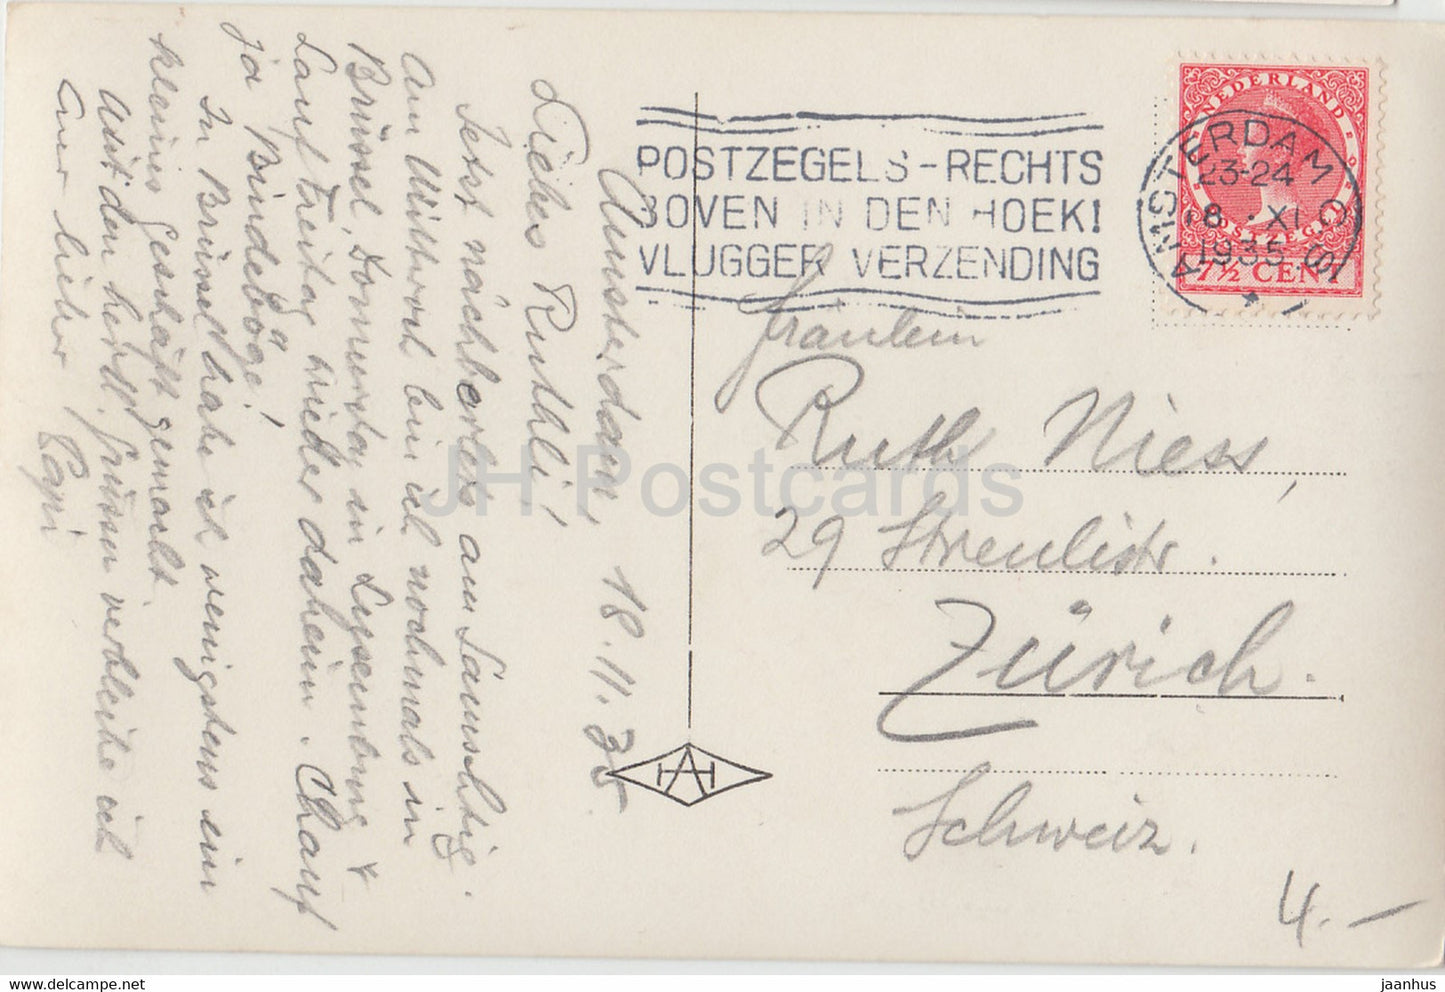 Amsterdam - Gezicht op het - Dampfschiff - Schiff - alte Postkarte - 1935 - Niederlande - gebraucht